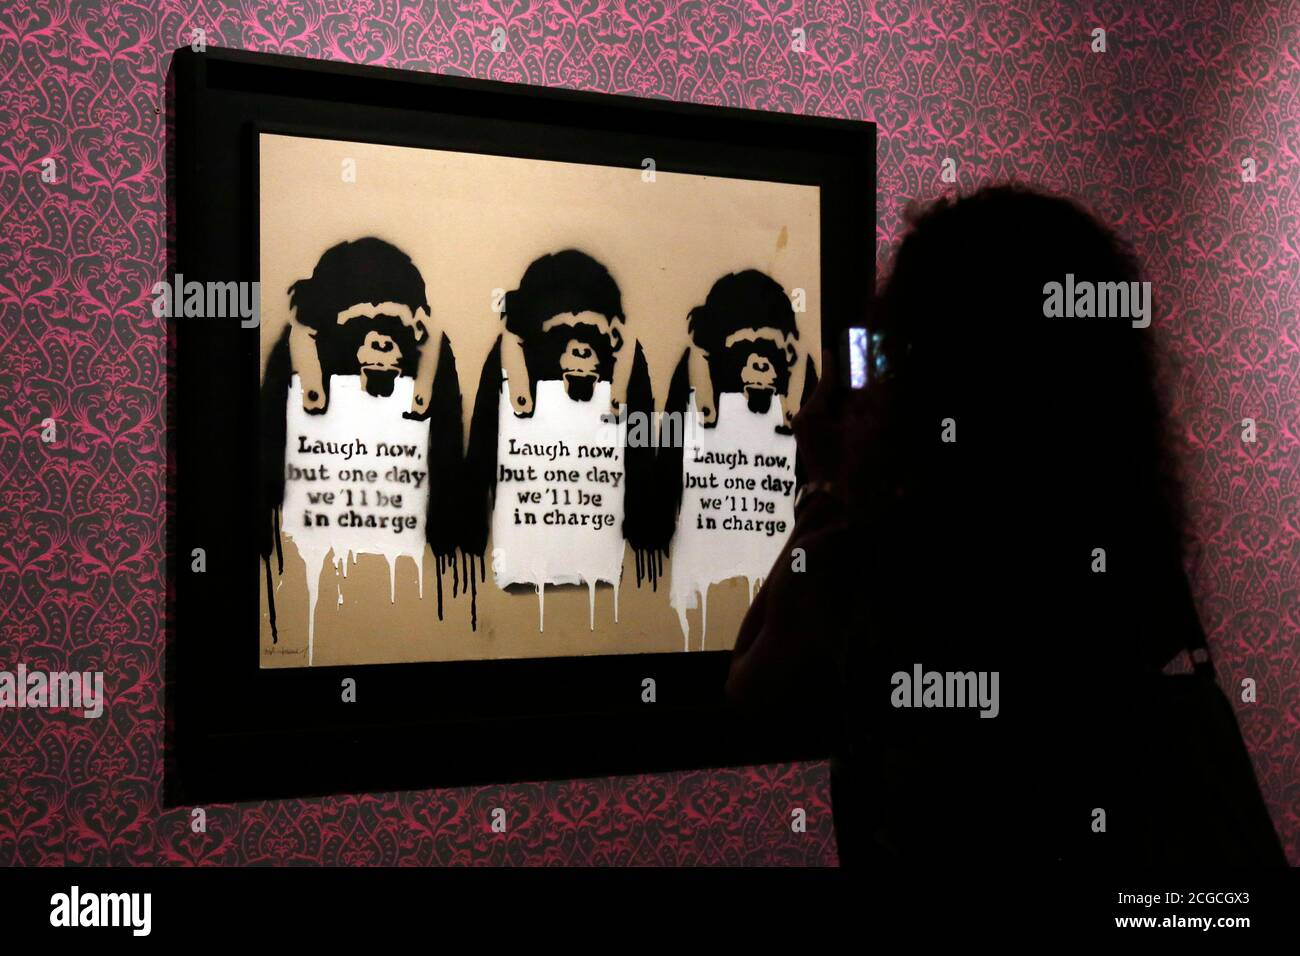 Mostra dell'artista Bansky, intitolata una protesta visiva, a Chiostro del Bramante a Roma. Roma (Italia), 10 settembre 2020 Foto Samantha Zucchi Insifefoto Foto Stock